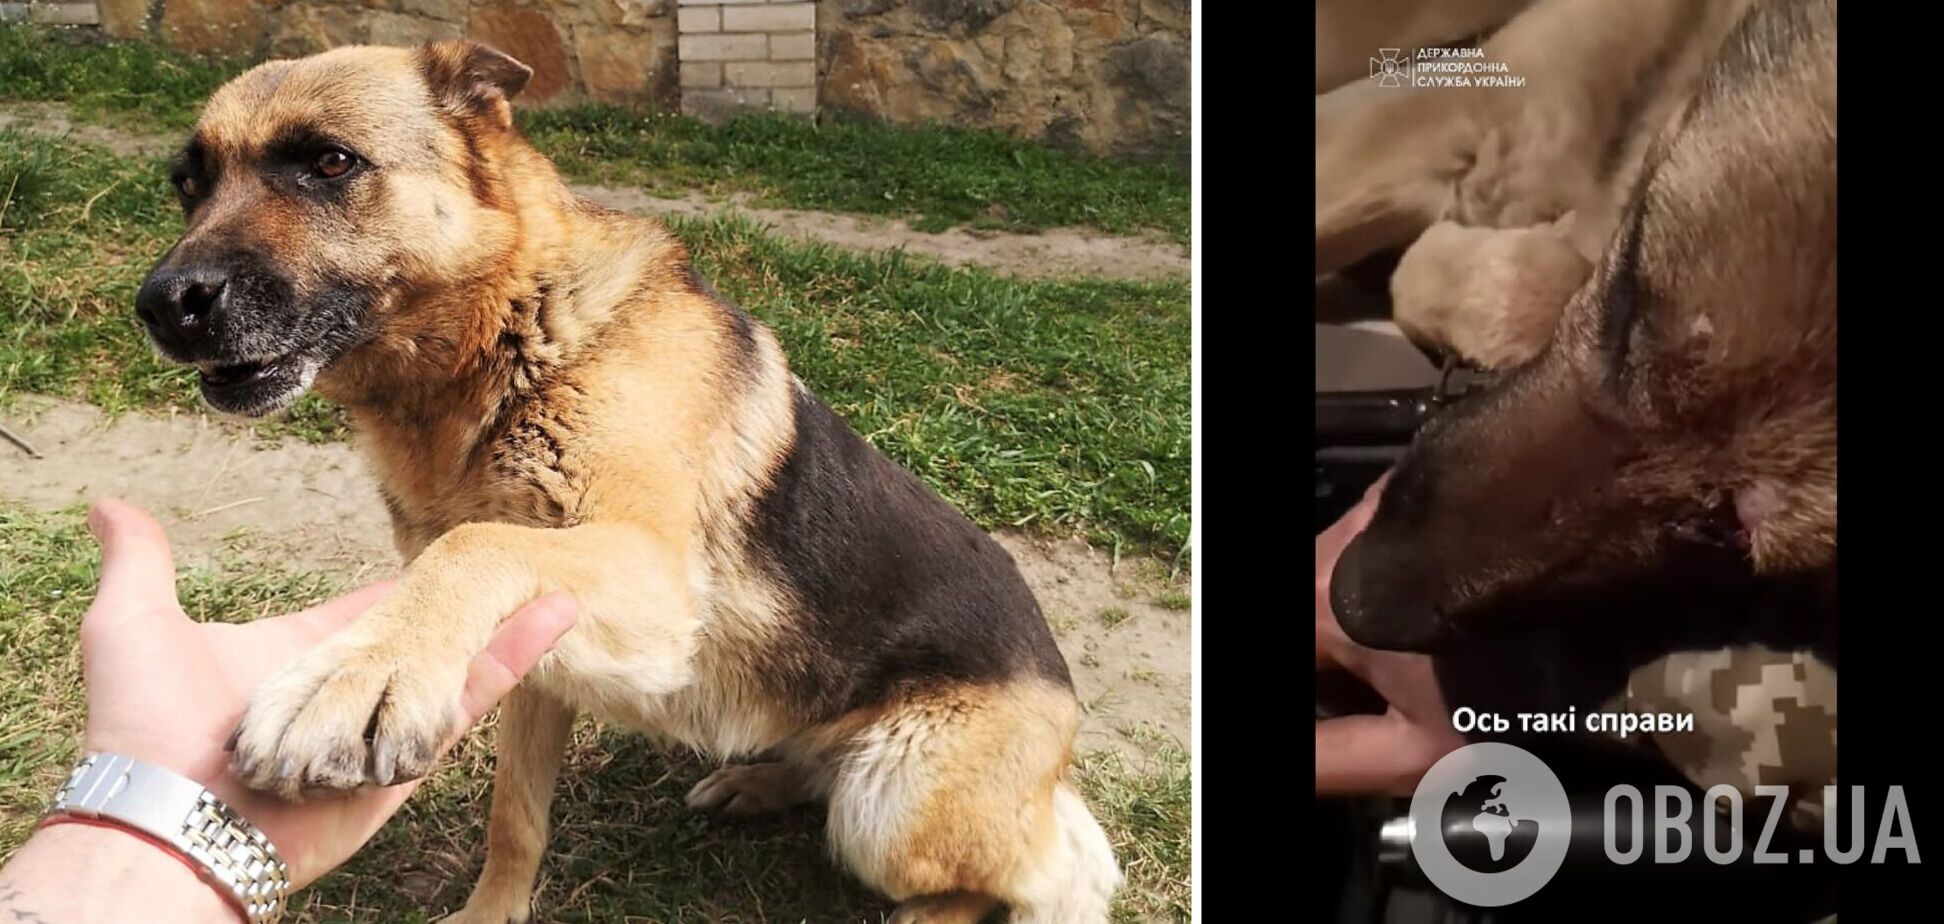 Украинский пограничник спас собаку, которую ранило на фронте на Донетчине. Трогательное видео